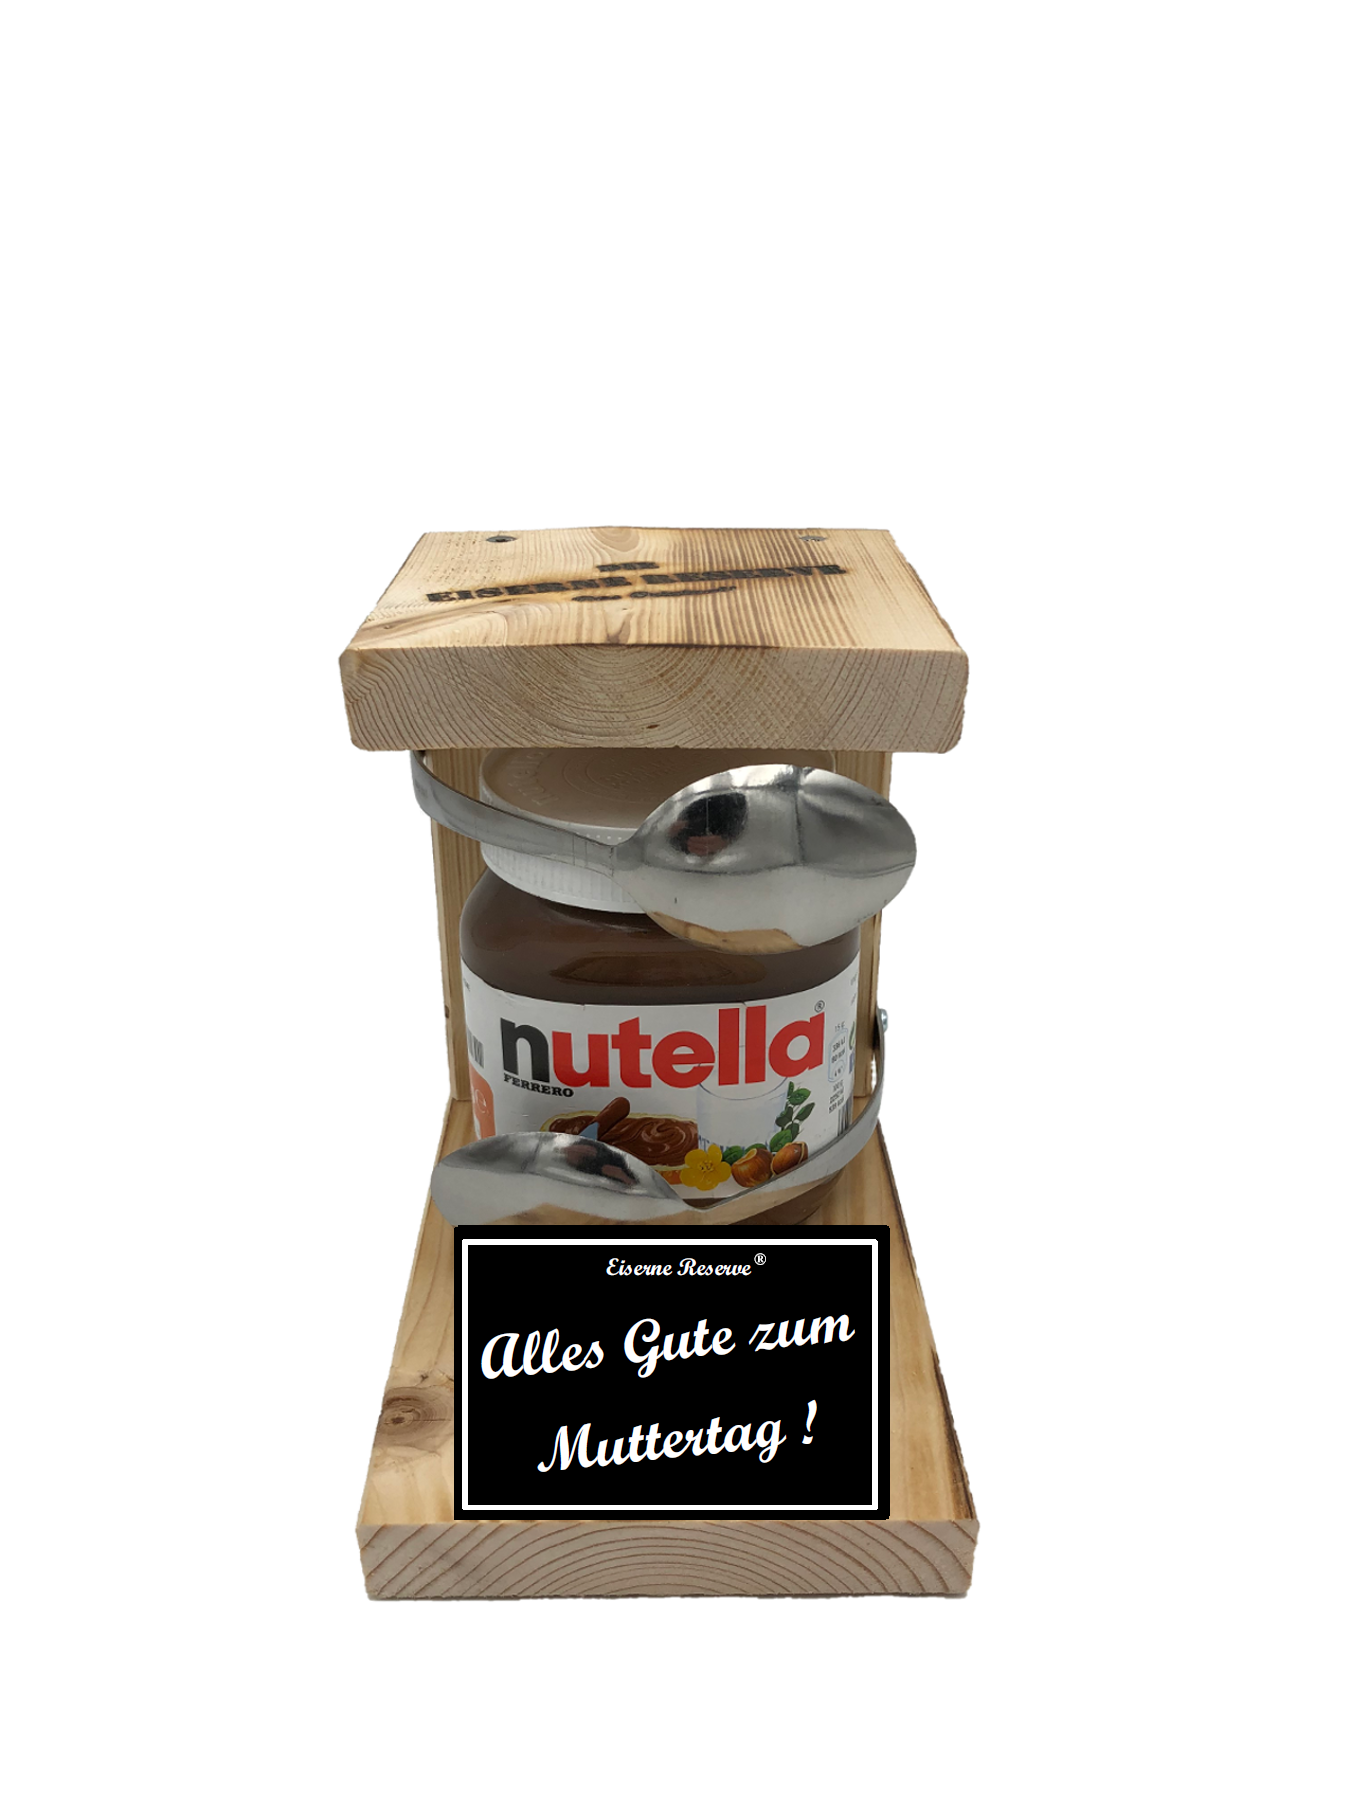 Alles Gute zum Muttertag Löffel Nutella Geschenk - Die Nutella Geschenkidee